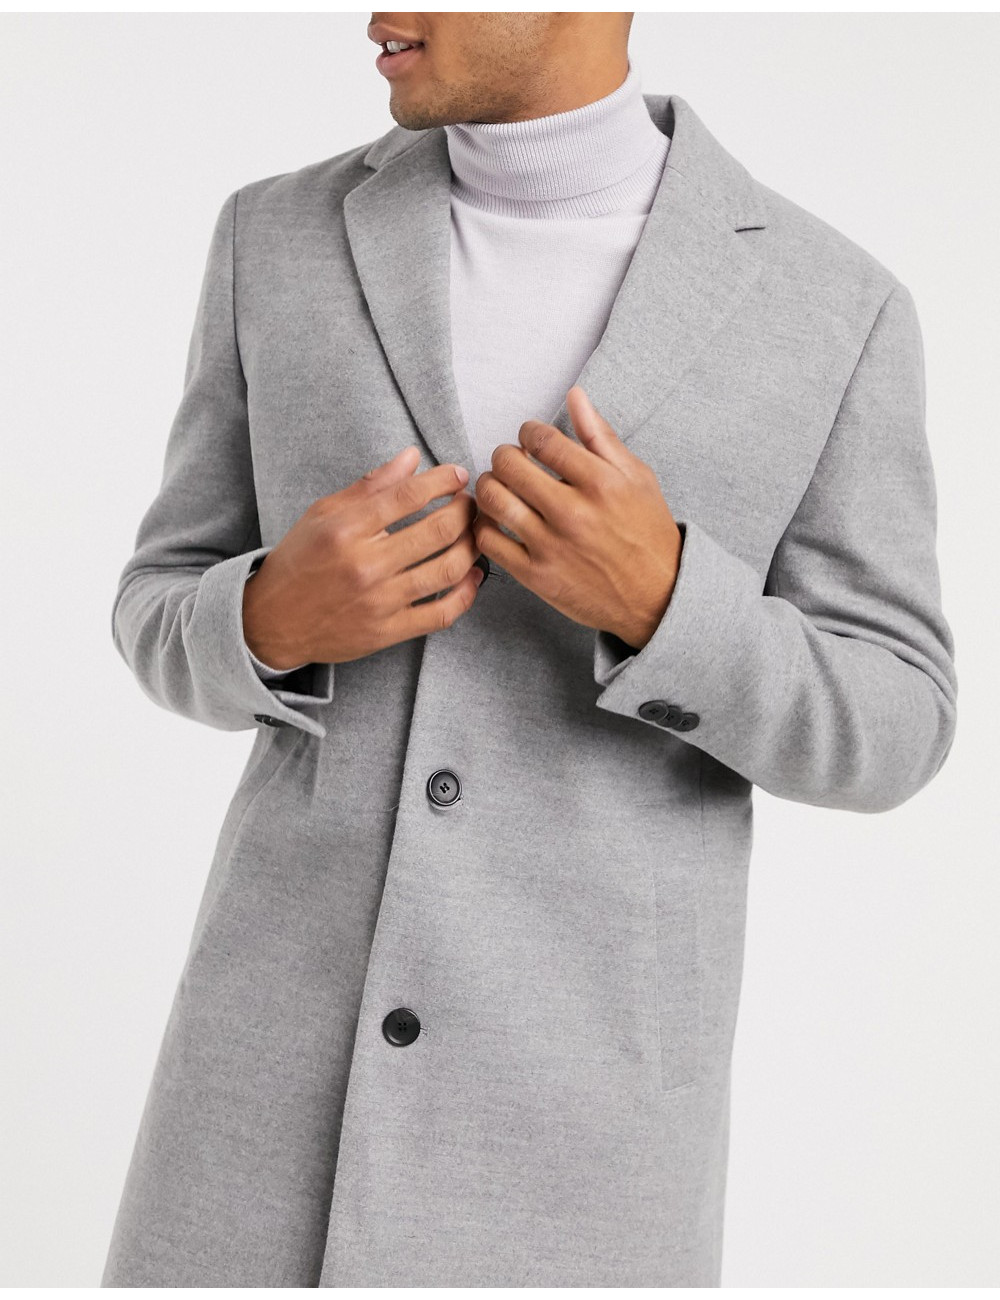 New Look overcoat in grey